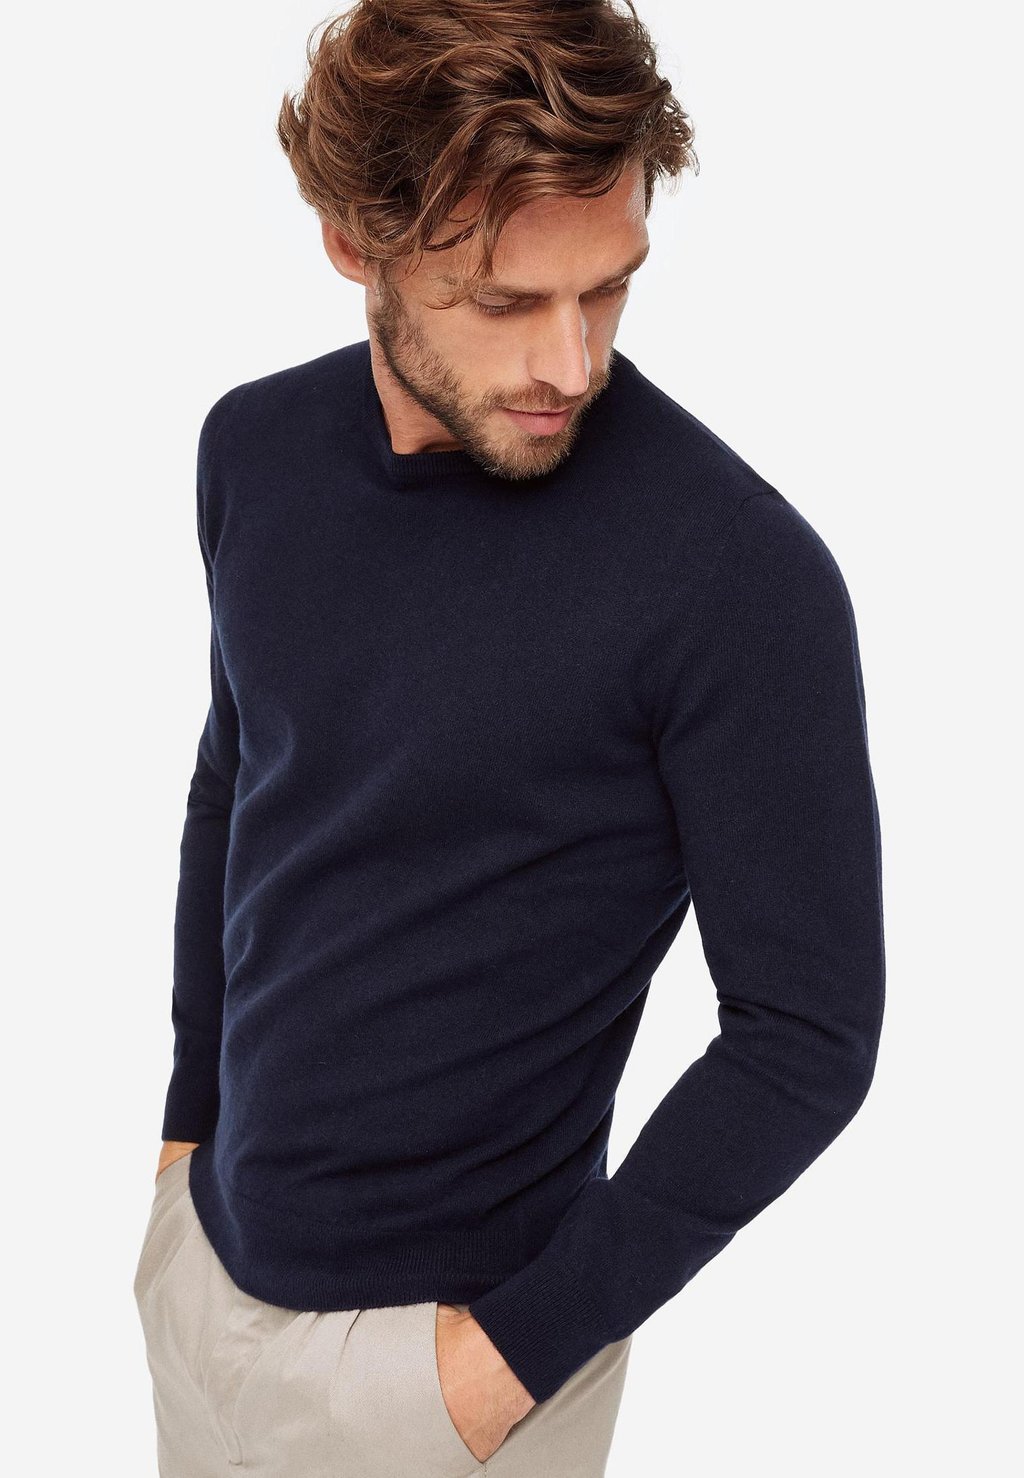 Вязаный свитер ROUND-NECK Falconeri, цвет blue navy вязаный свитер round neck falconeri цвет blue navy